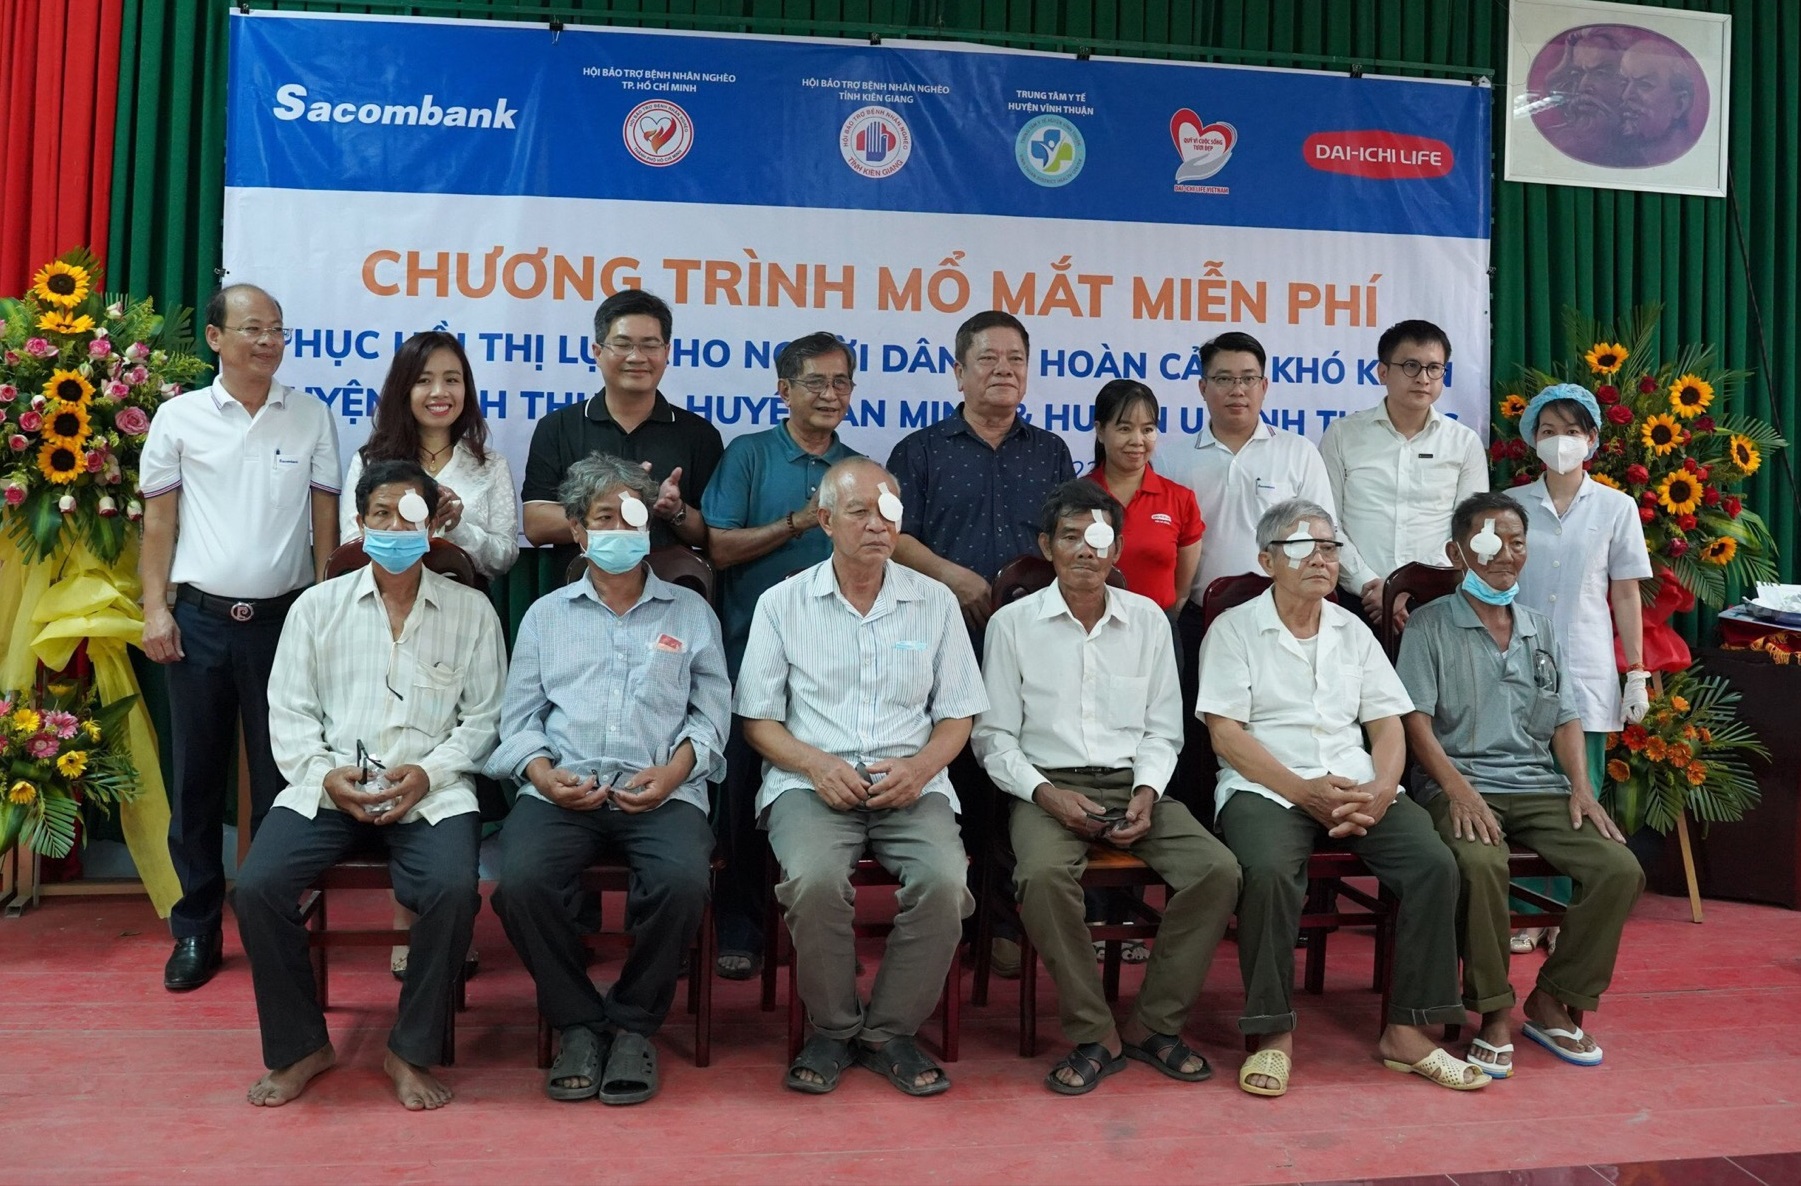 Chương trình mổ mắt miễn phí cho các bệnh nhân tại tỉnh Kiên Giang